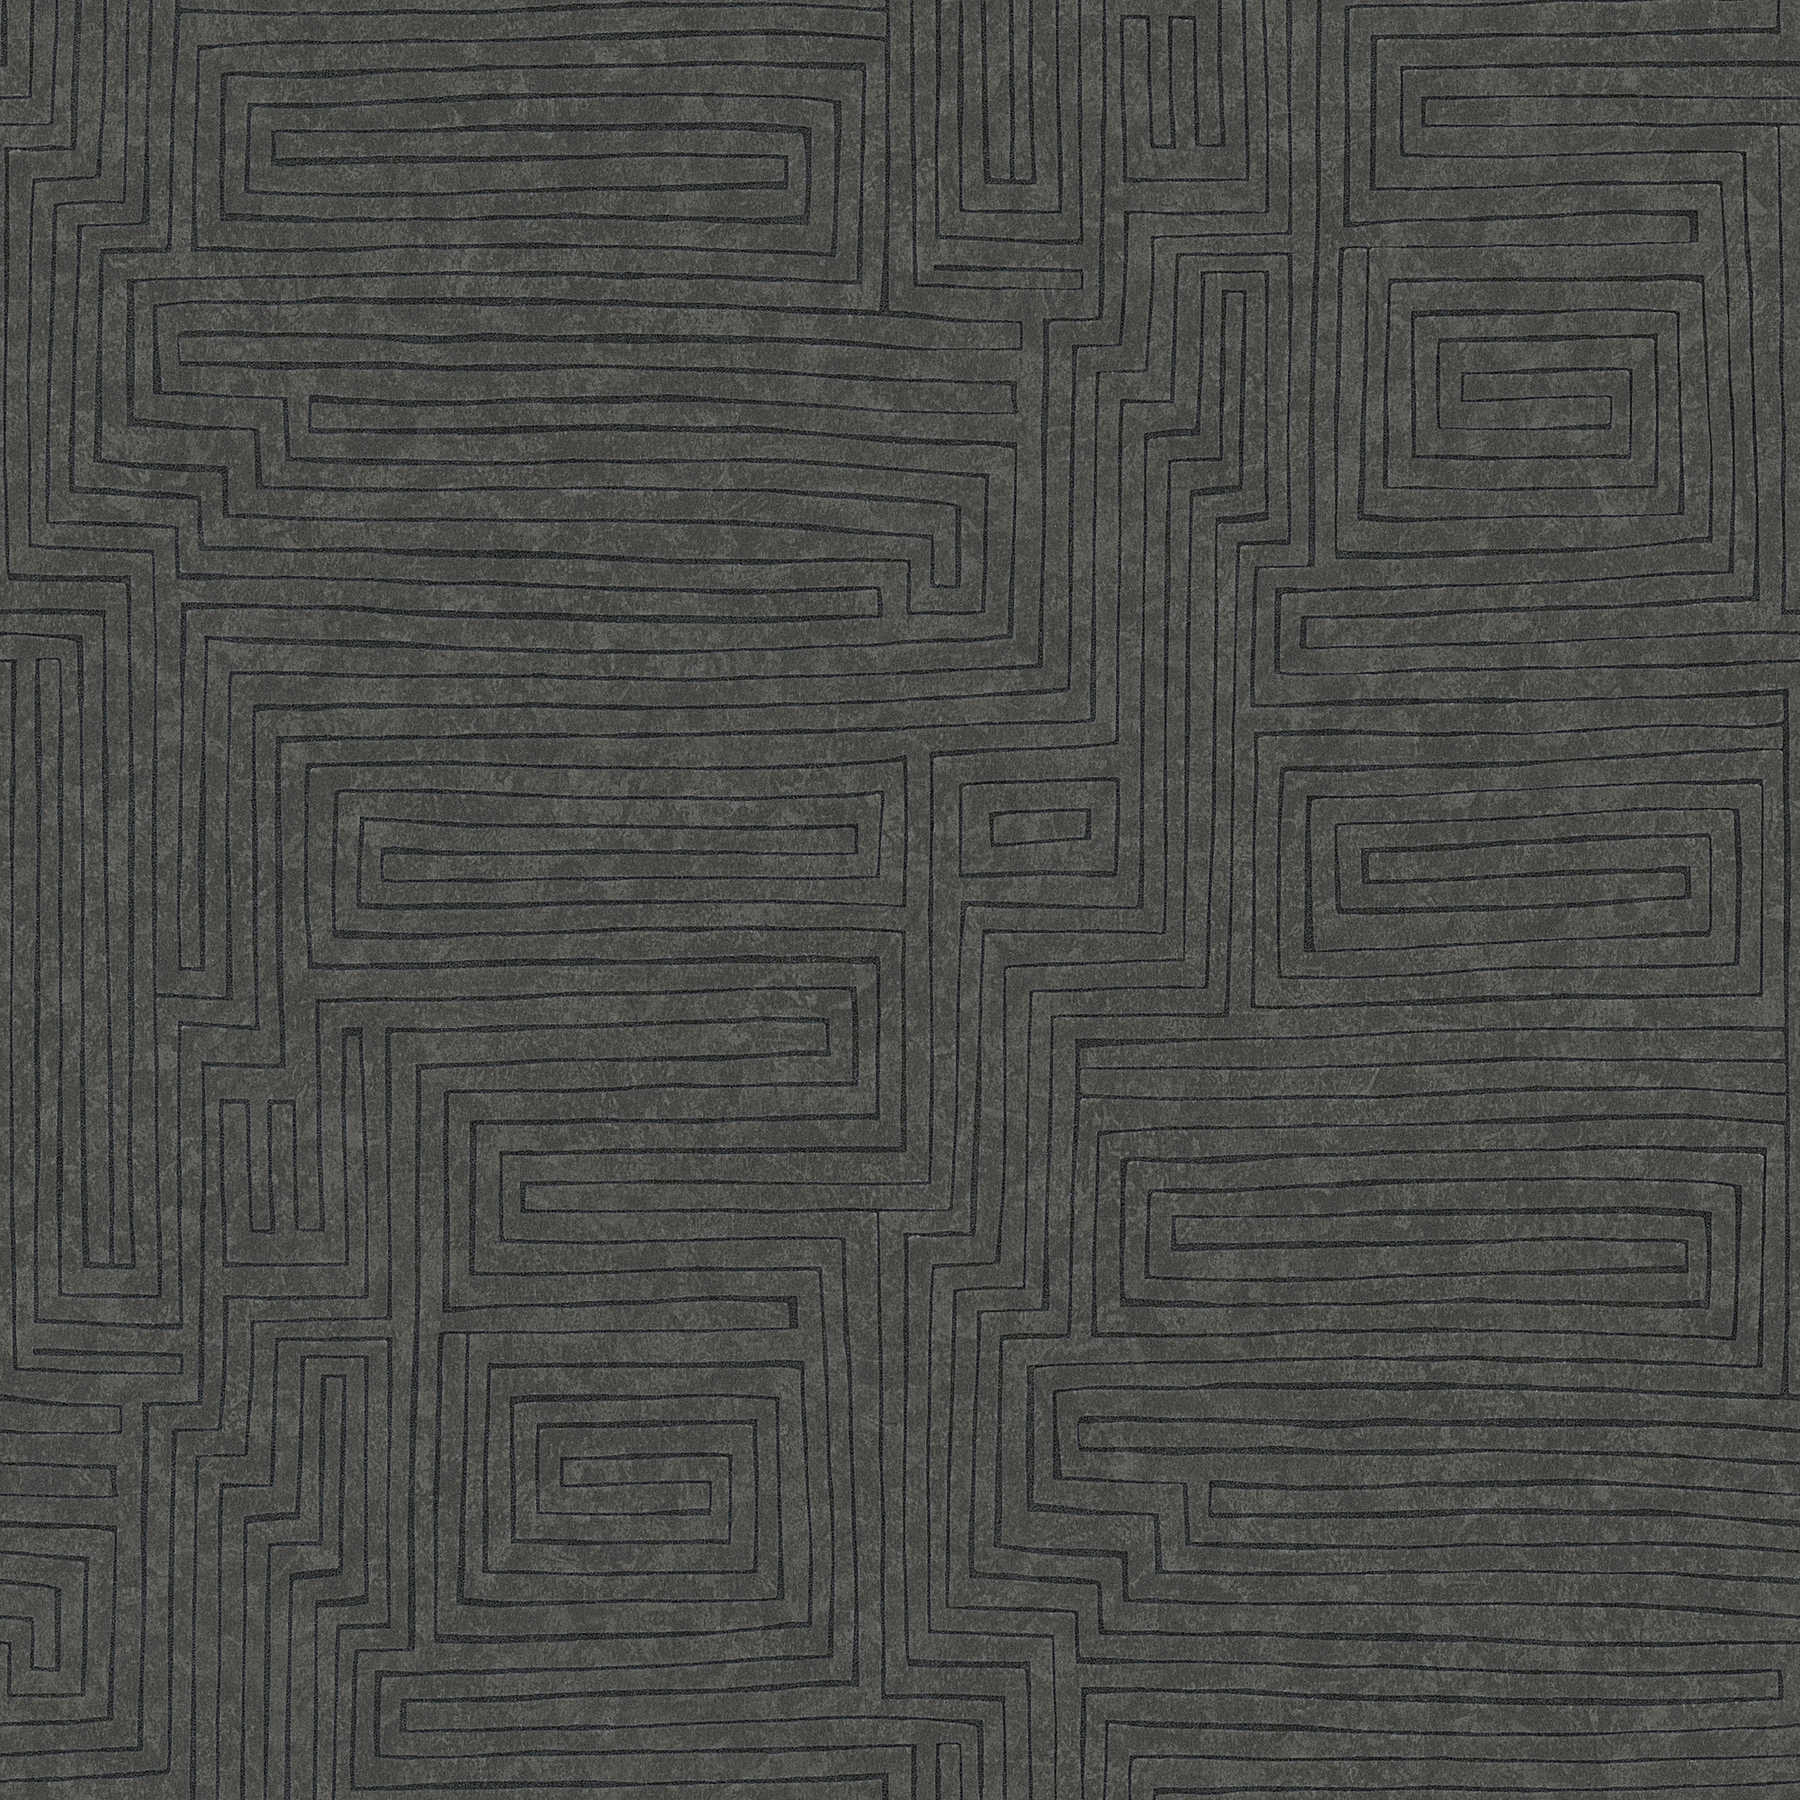 Papier peint ethnique uni avec motif à lignes & effet structuré - marron, noir
